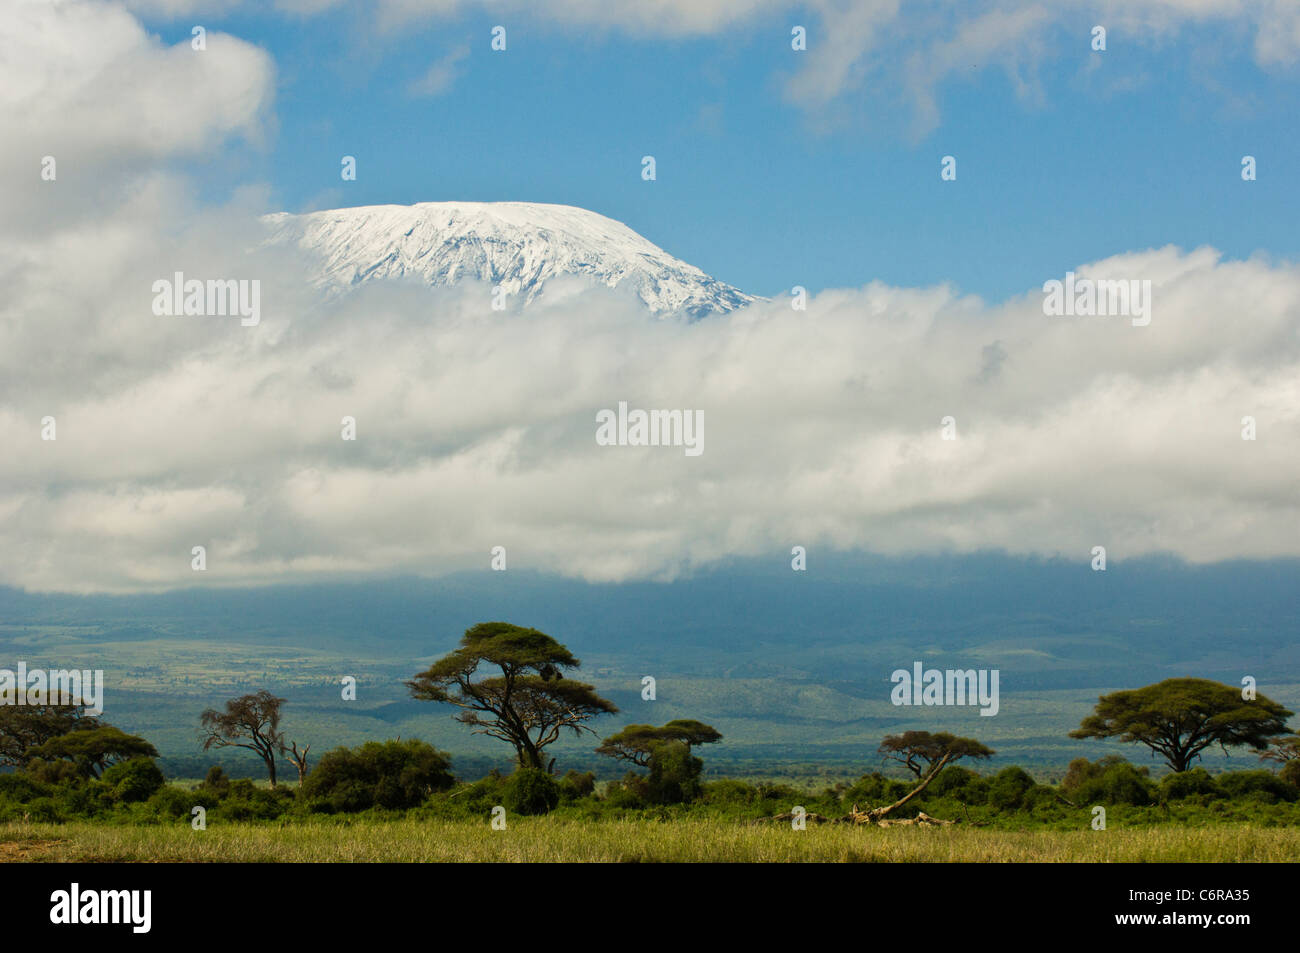 Un tipico nuvoloso vista del Monte Kilimanjaro's Kibo peak. La montagna si trova in Tanzania, al di là del confine. Foto Stock